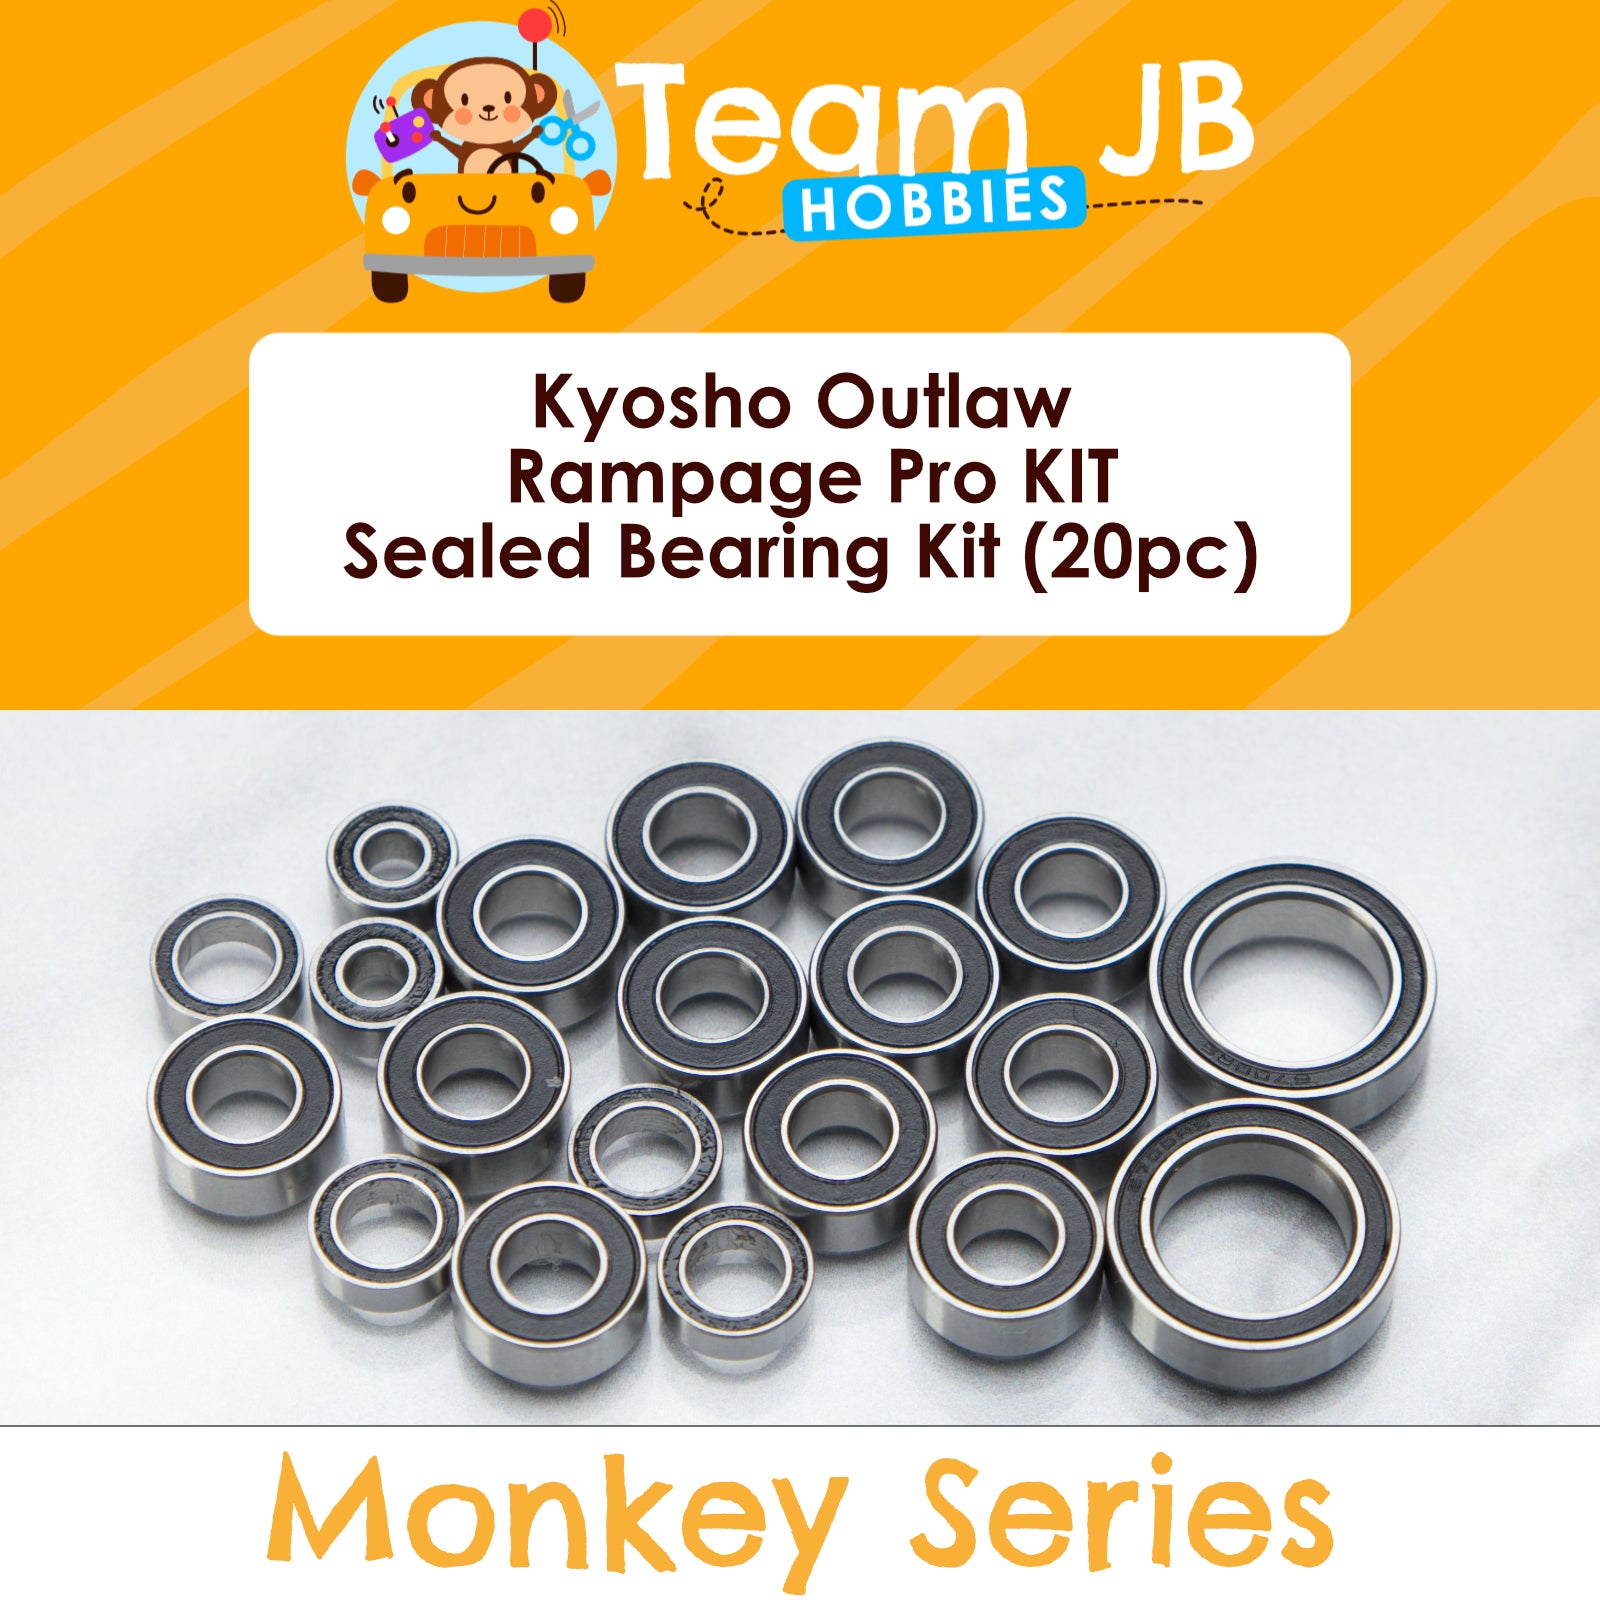 Kyosho Outlaw Rampage Pro KIT - Sealed Bearing Kit